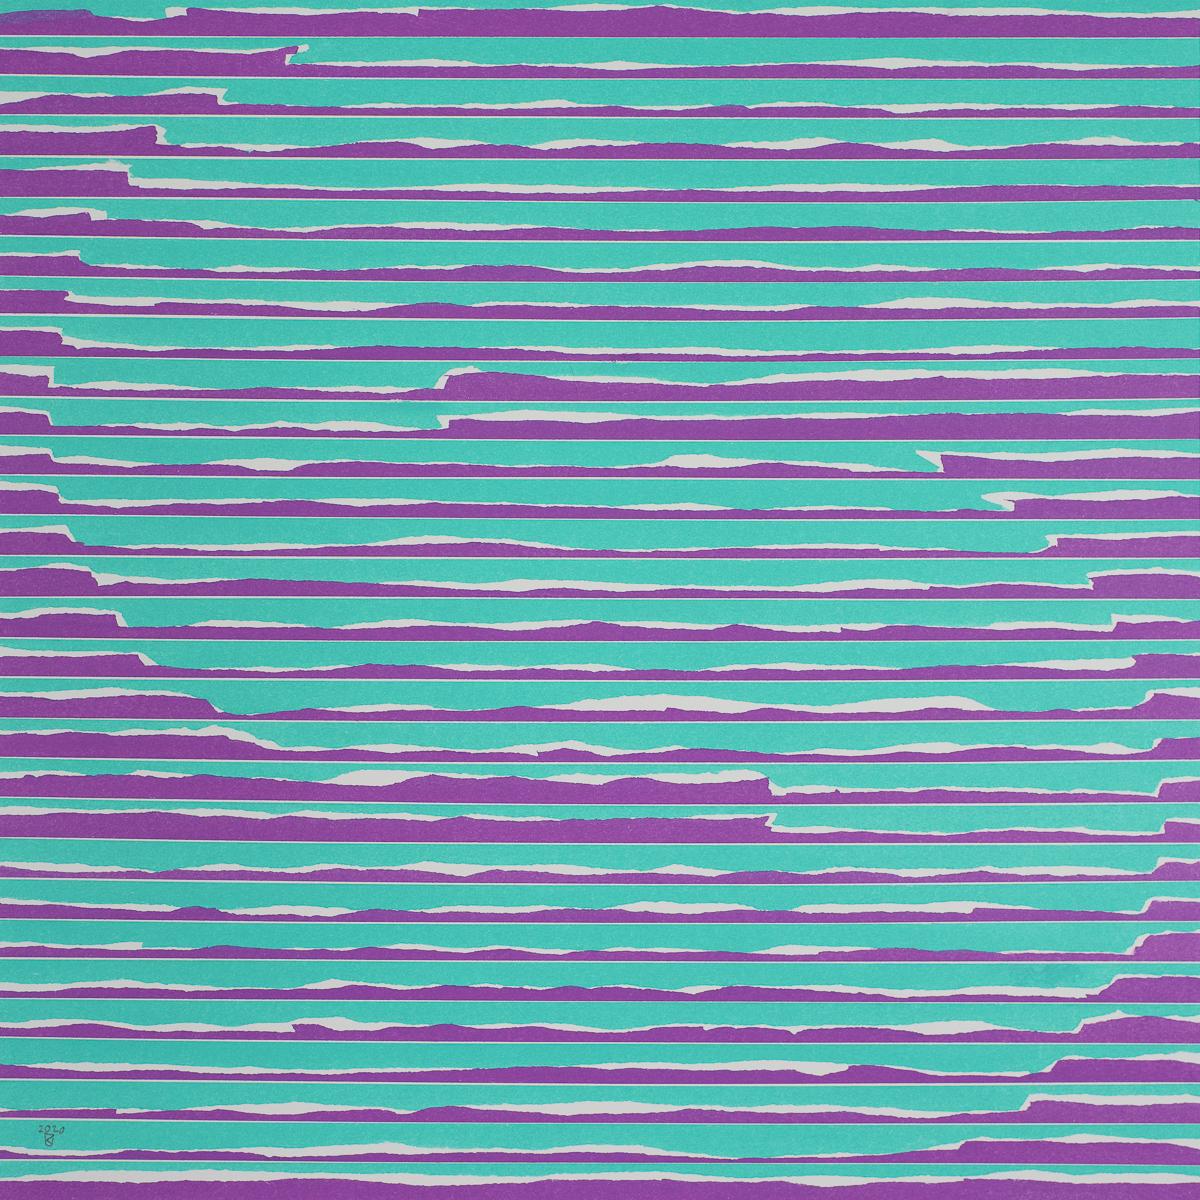  S  from The Message Series - Peinture abstraite contemporaine à l'huile au pastel, encadrée